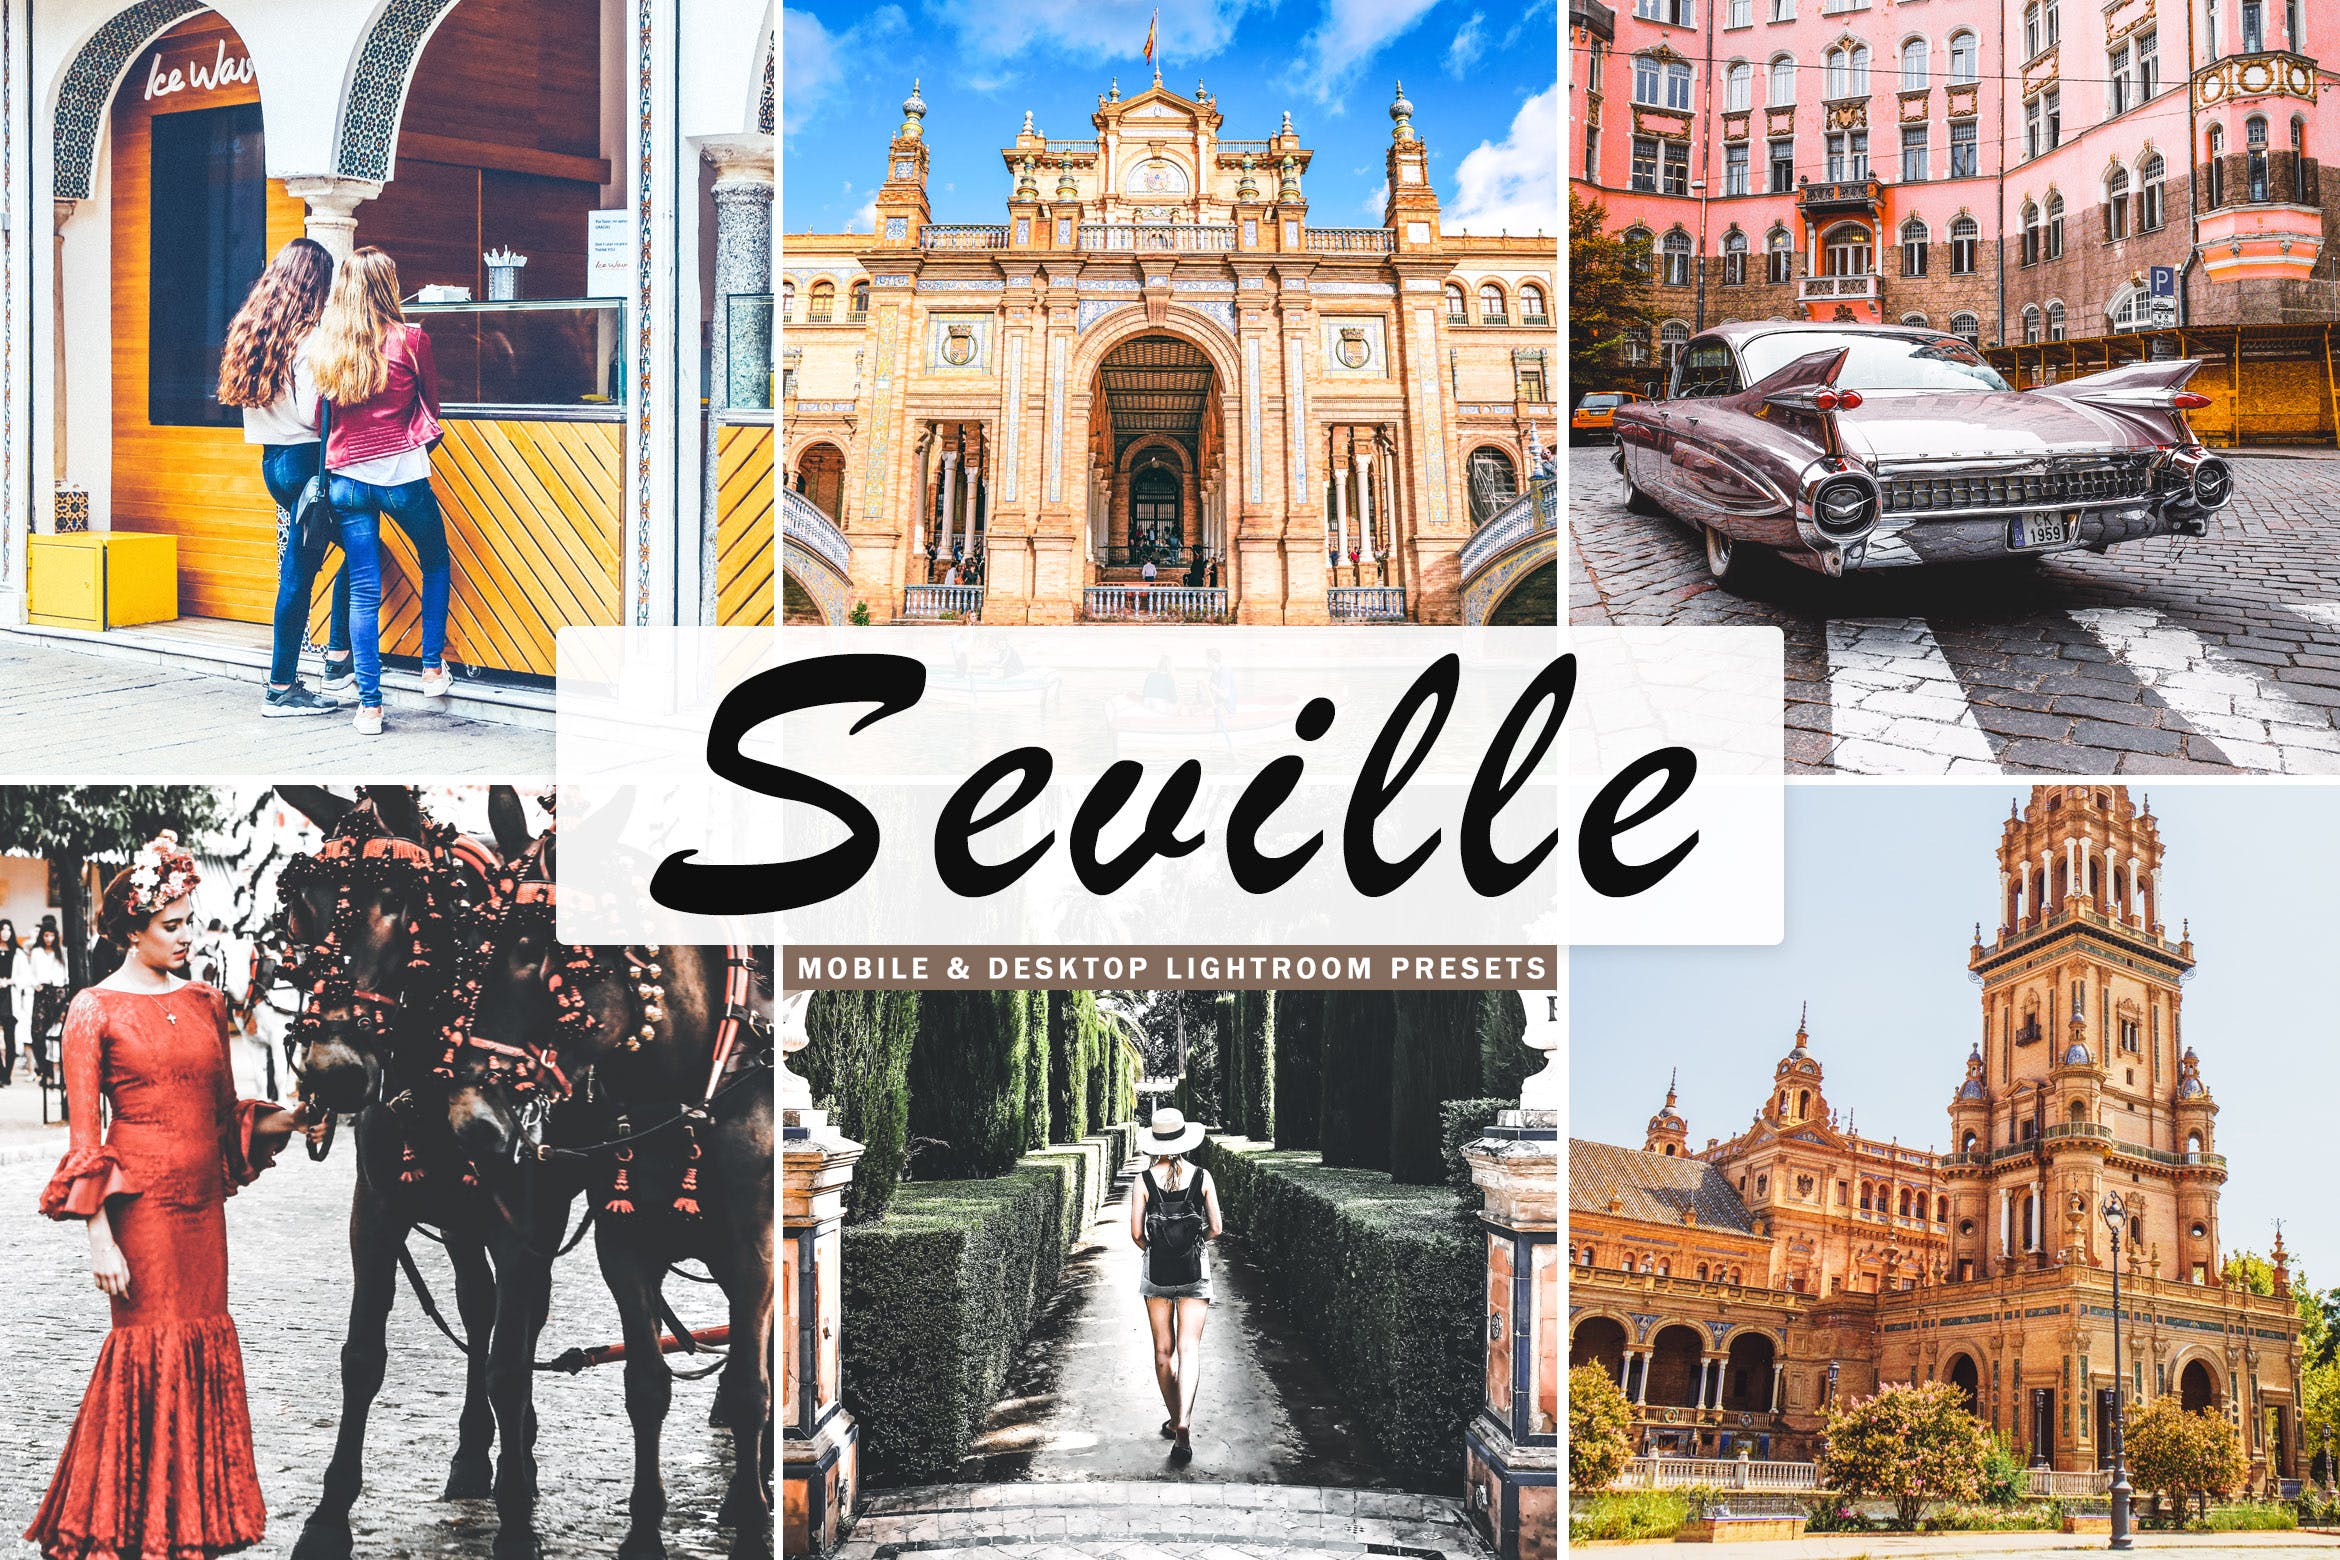 塞维利亚旅行摄影后期加工16图库精选LR预设 Seville Mobile & Desktop Lightroom Presets插图